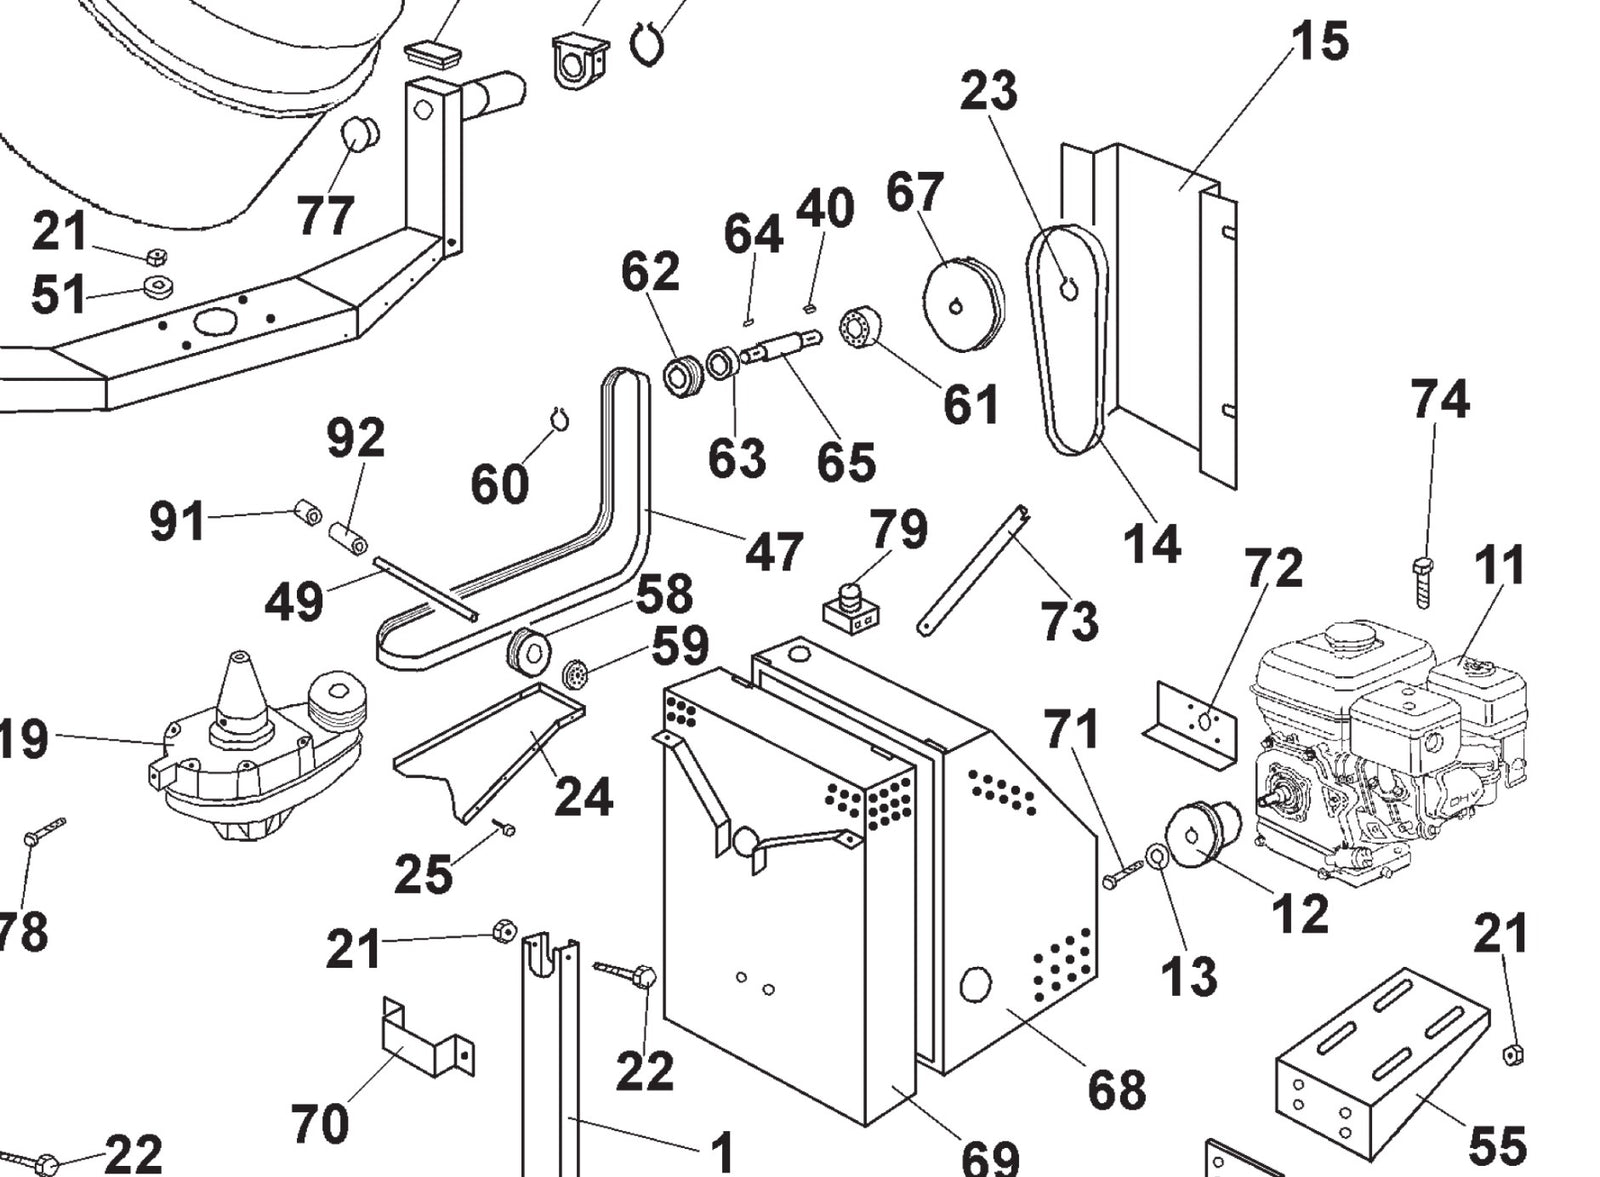 Workman 250 II Mixer PN 3209054 Shaft, Item # 65 in schematic